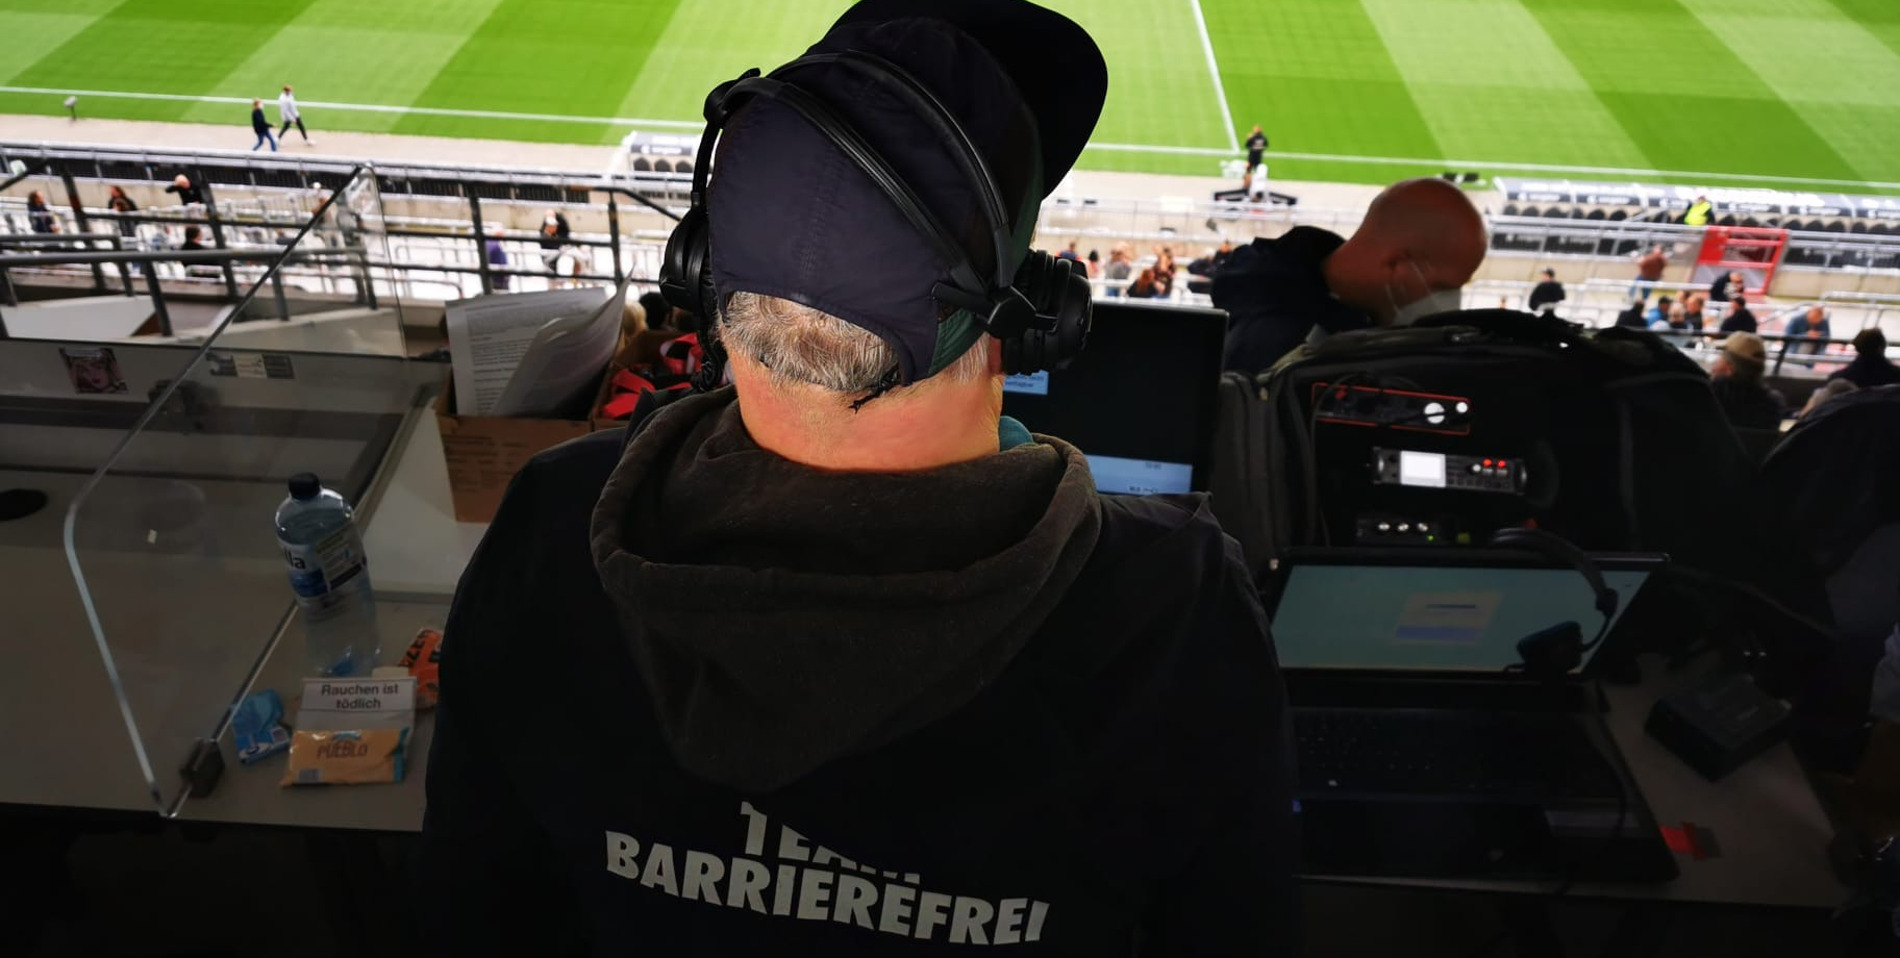 Person von hinten fotografiert, die einen Pullover mit Team Barrierefrei-Aufschrift und Kopfhörer trägt. Die Person guckt dabei auf das Spielfeld.